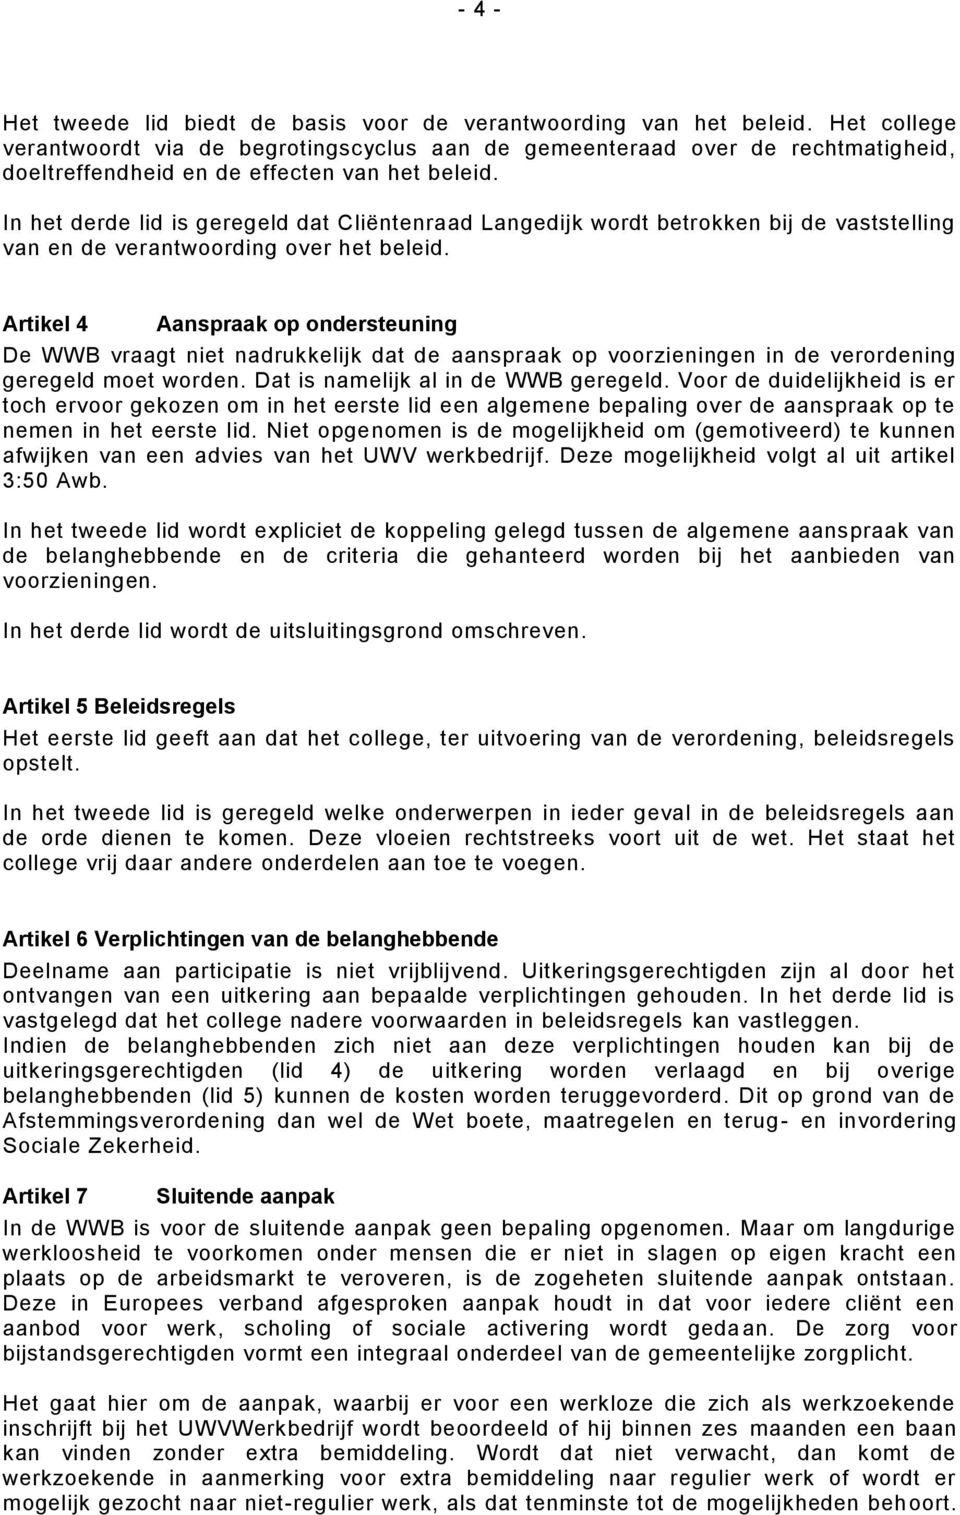 In het derde lid is geregeld dat Cliëntenraad Langedijk wordt betrokken bij de vaststelling van en de verantwoording over het beleid.